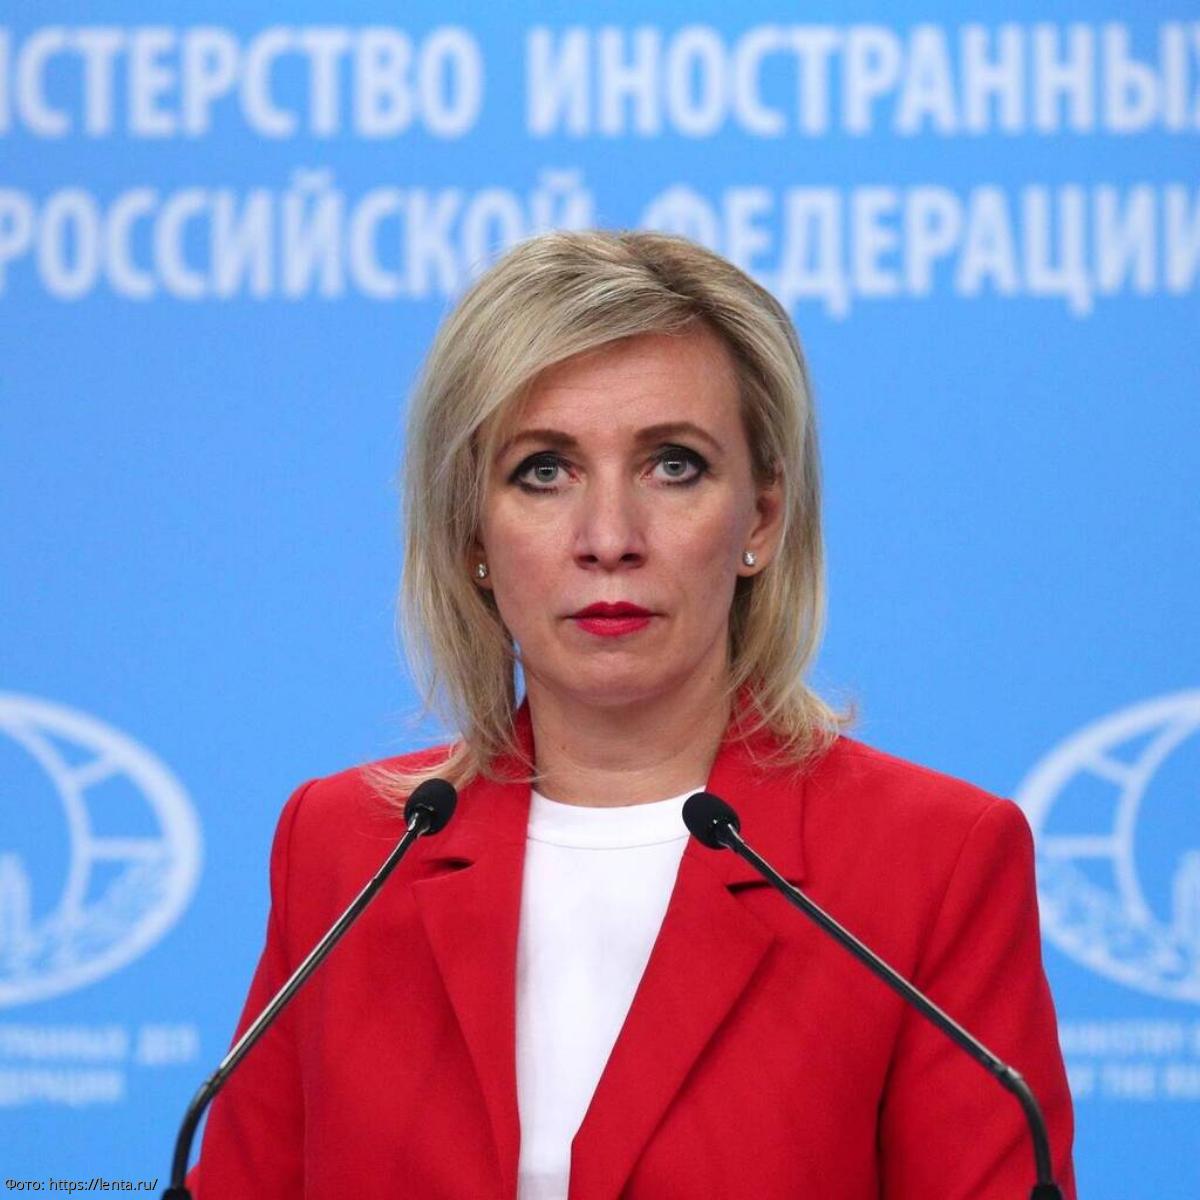 Захарова назвала закрытие неба самолету Лаврова «пещерным методом» Европы показать свое единство